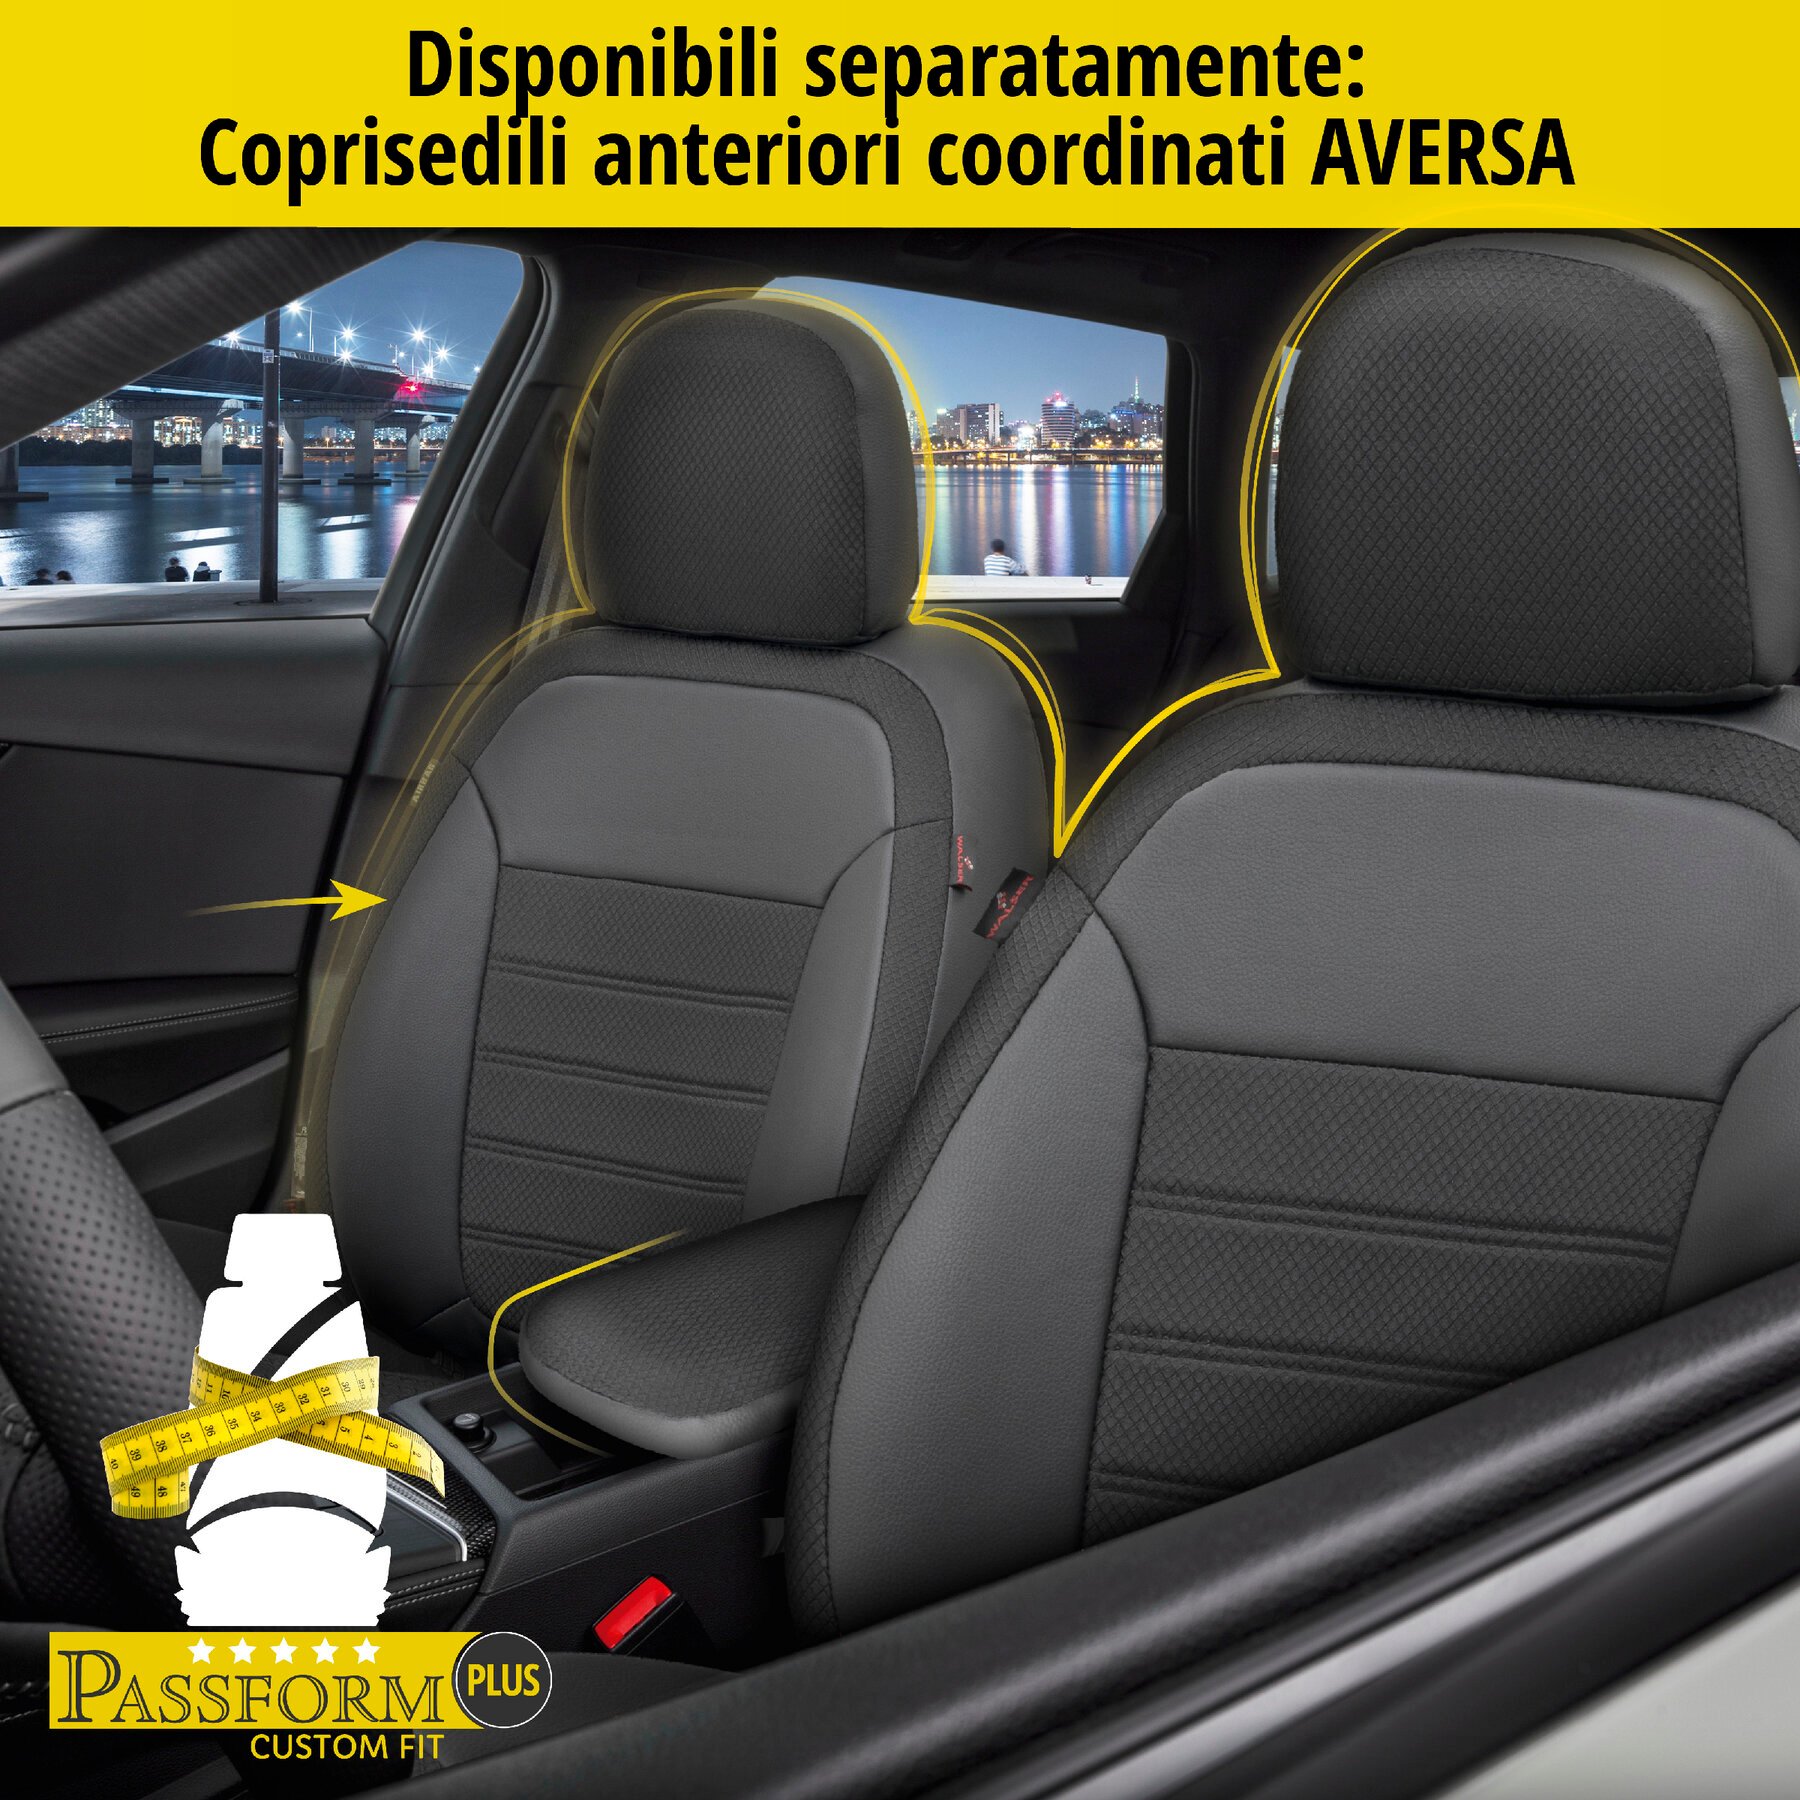 Coprisedili Aversa per Mazda CX-3 (DK) 01/2015-Oggi, 1 coprisedili posteriore per sedili normali